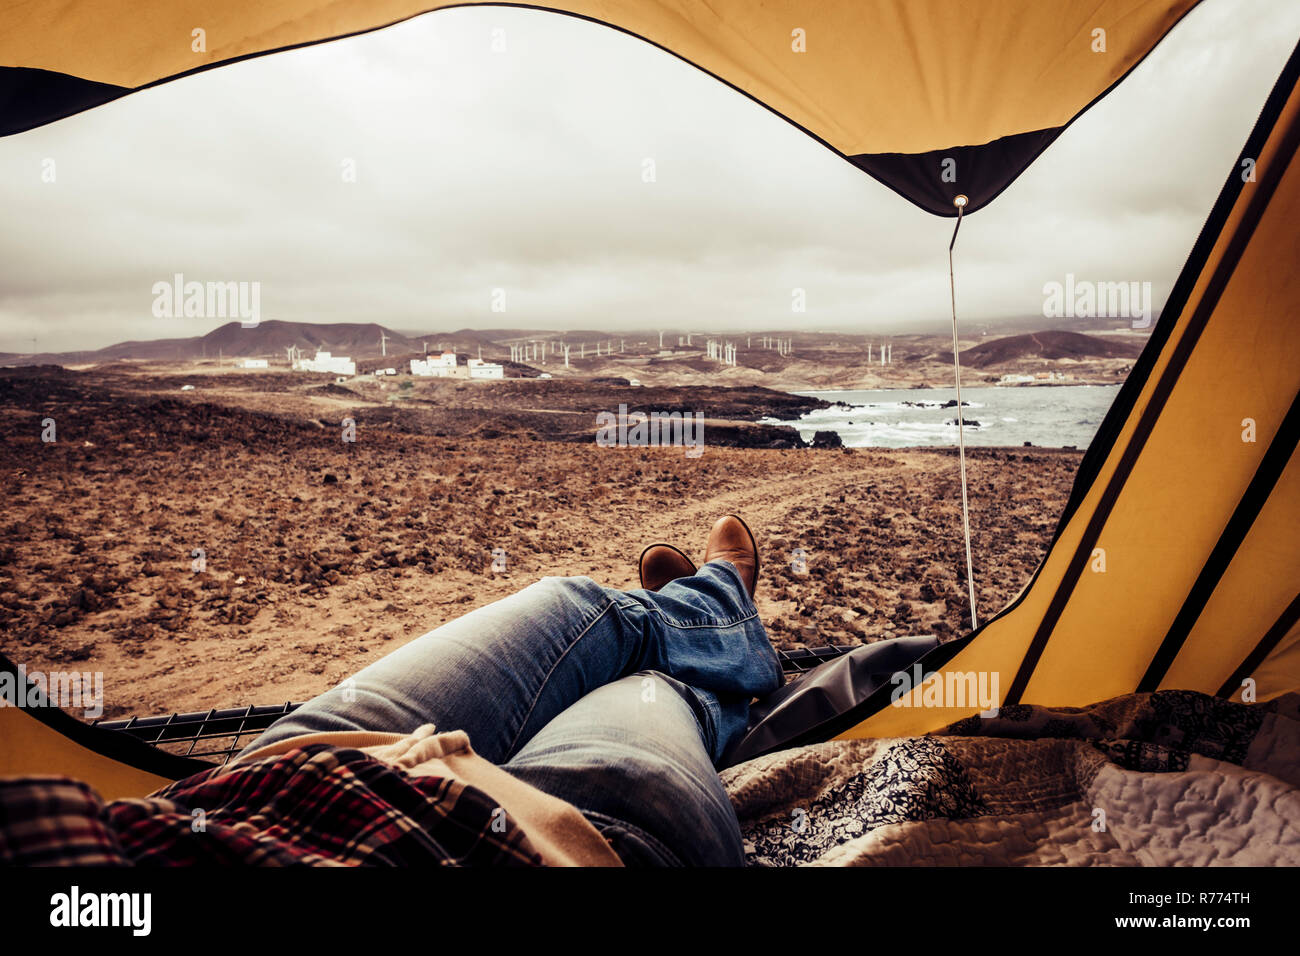 La donna appoggia all'interno di una tenda con un bellissimo paesaggio outdoor - travel amd wanderlust alternativa il concetto di stile di vita per le persone che amano la libertà e la natura Foto Stock